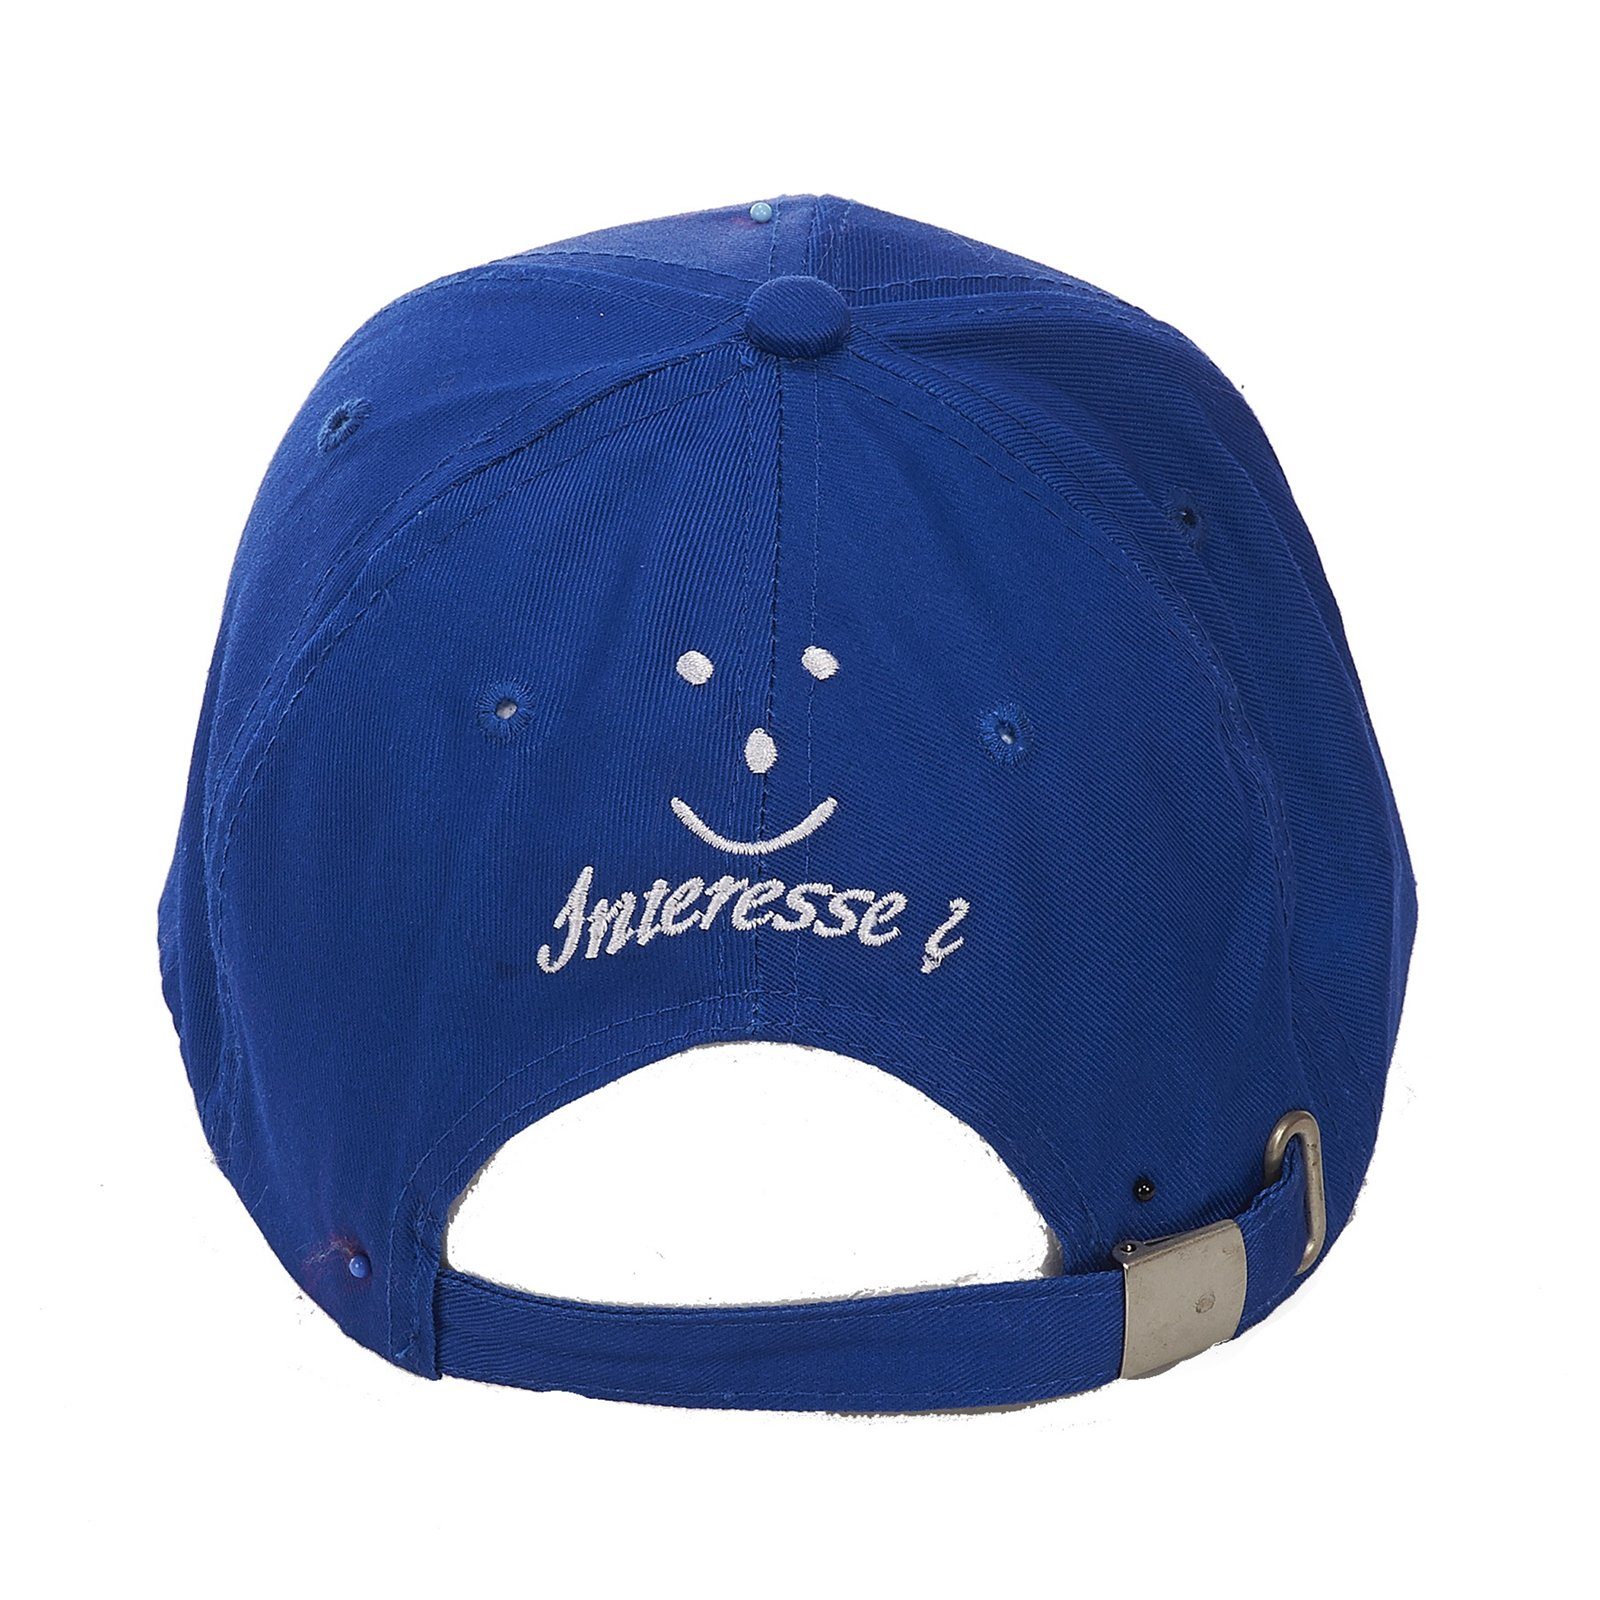 Baseball Single Cap Blau HTI-Living Baseball Cap